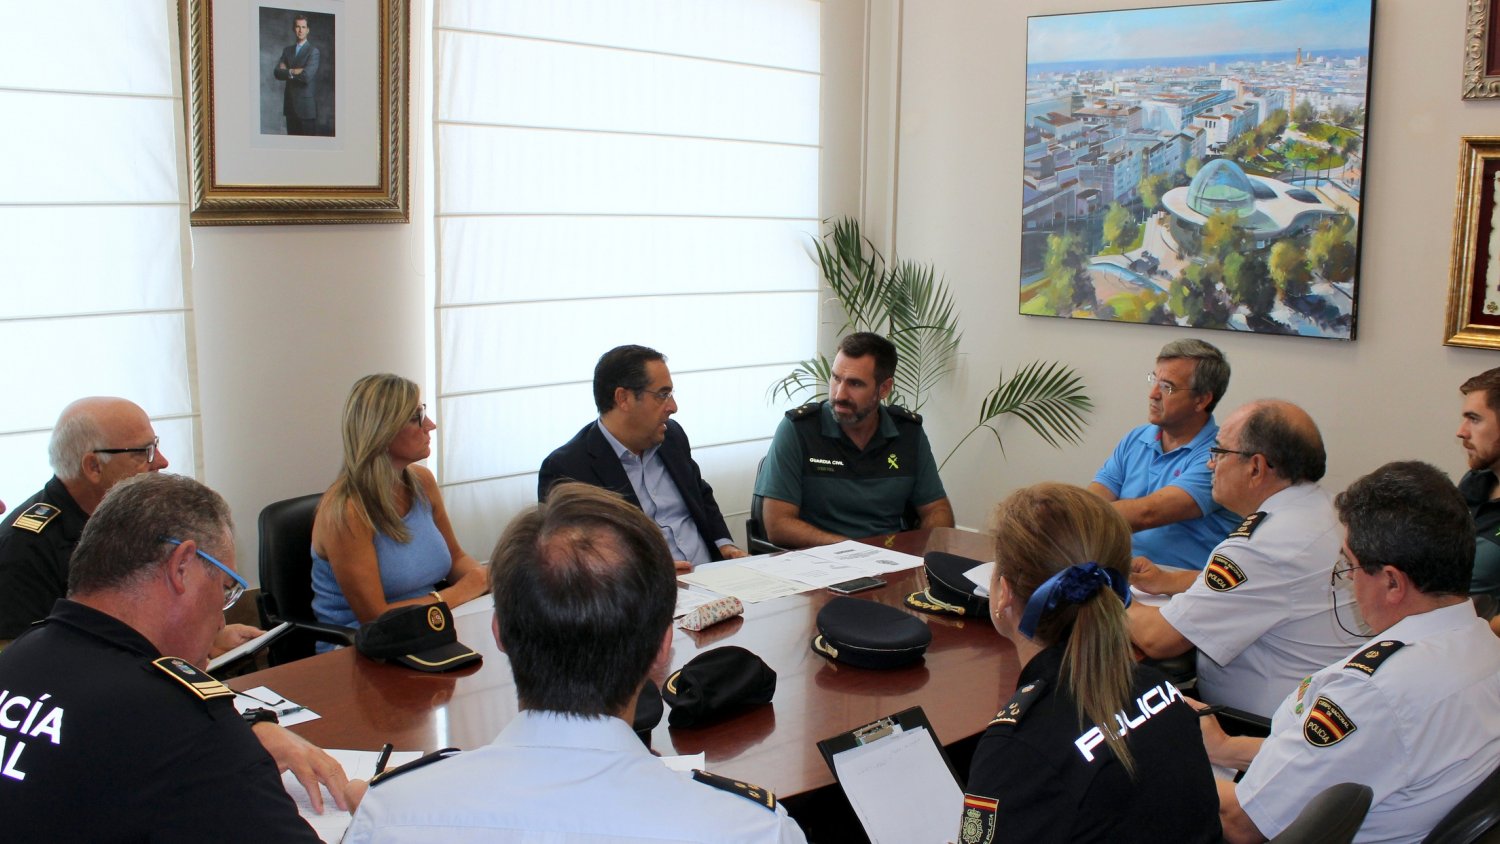 La Junta Local de Seguridad de Estepona acuerda reforzar las medidas de seguridad y la coordinación policial